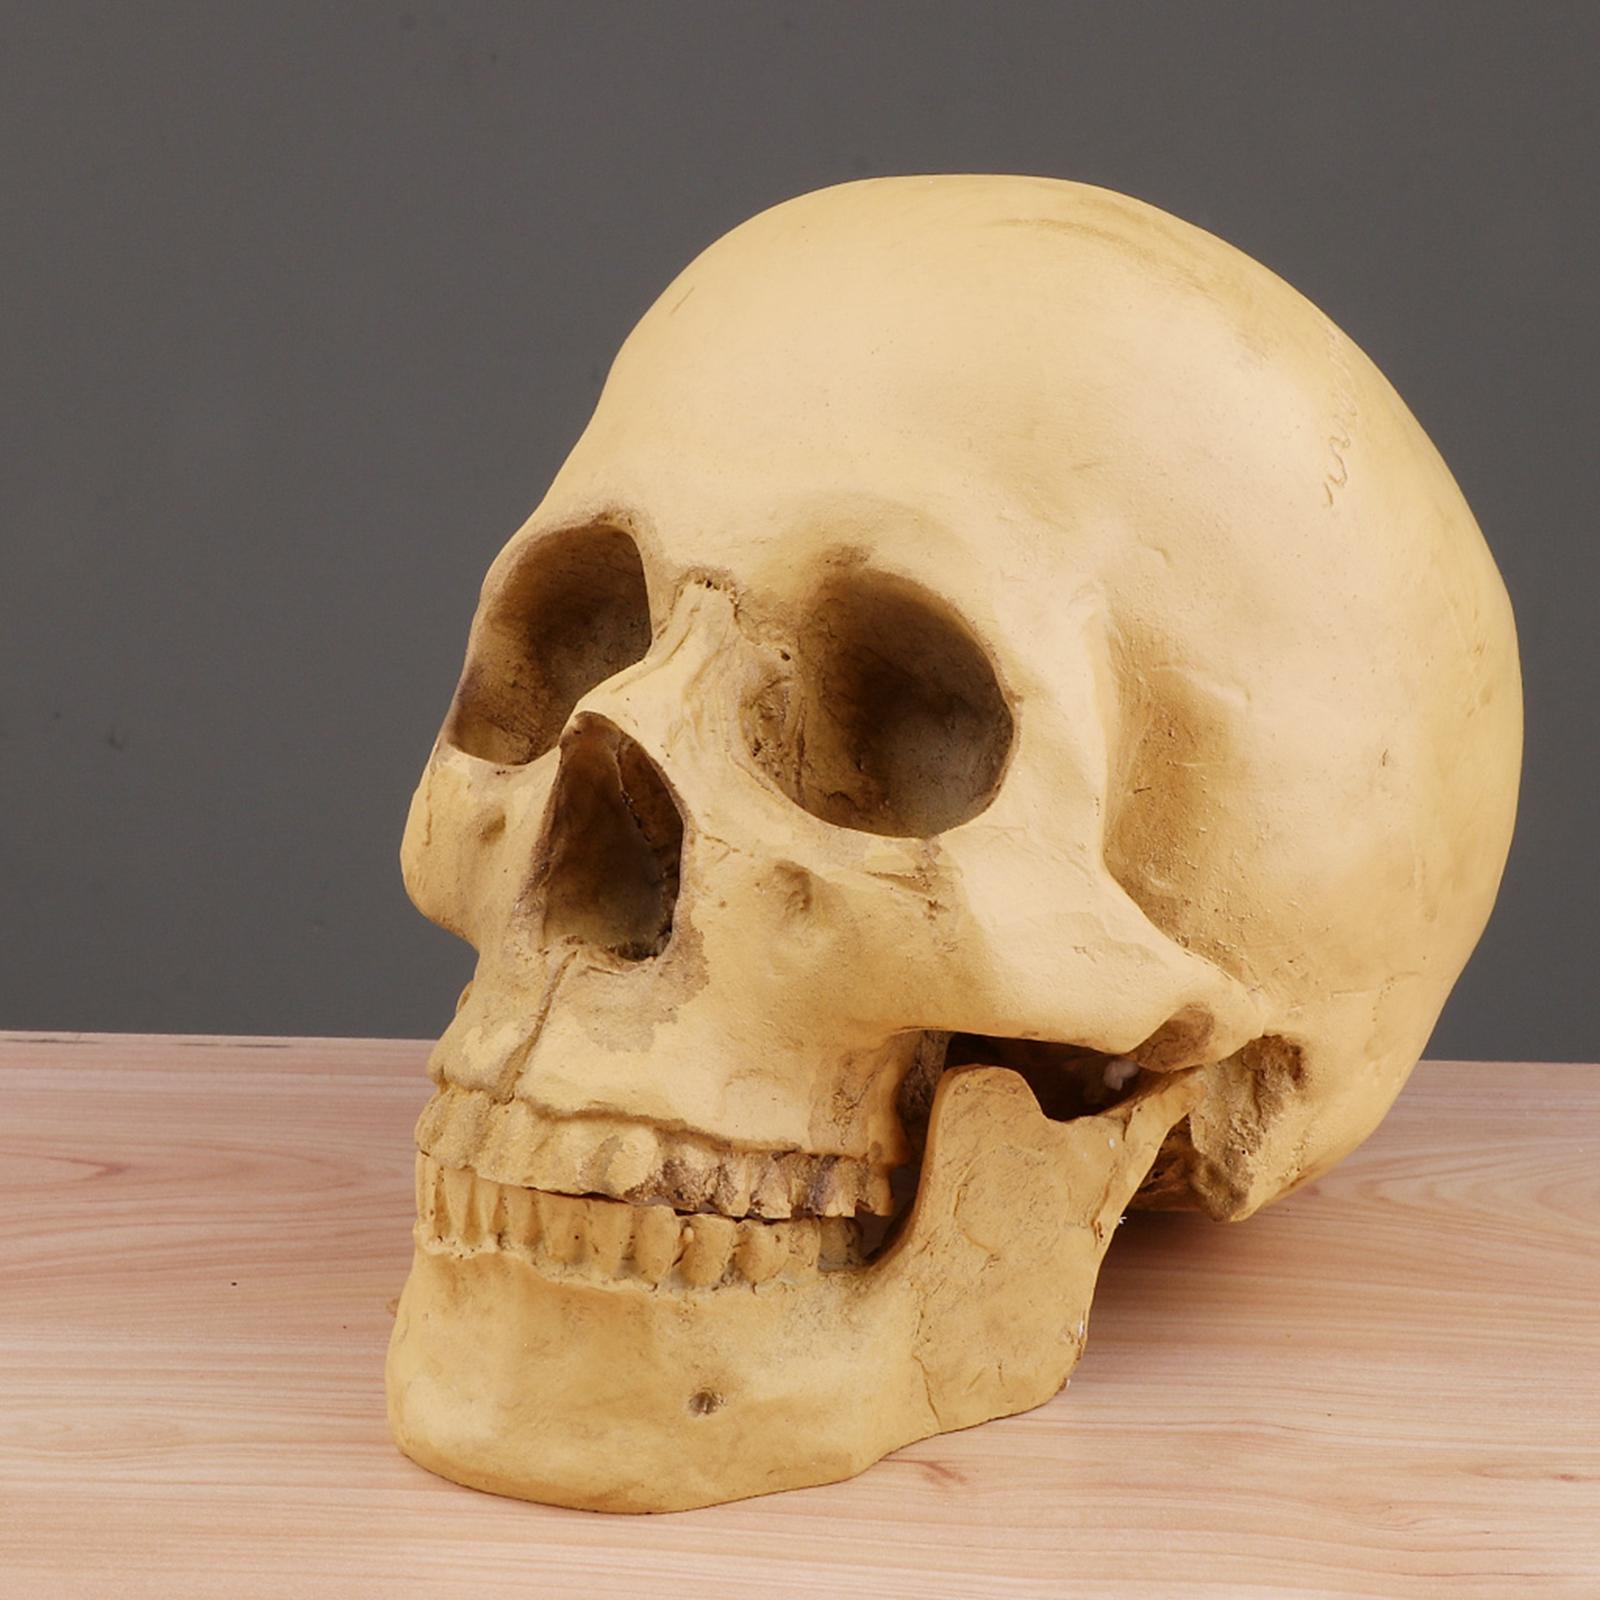 1:1 Human Skull Resin Model Anatomical Medical Teaching Skeleton Yellow